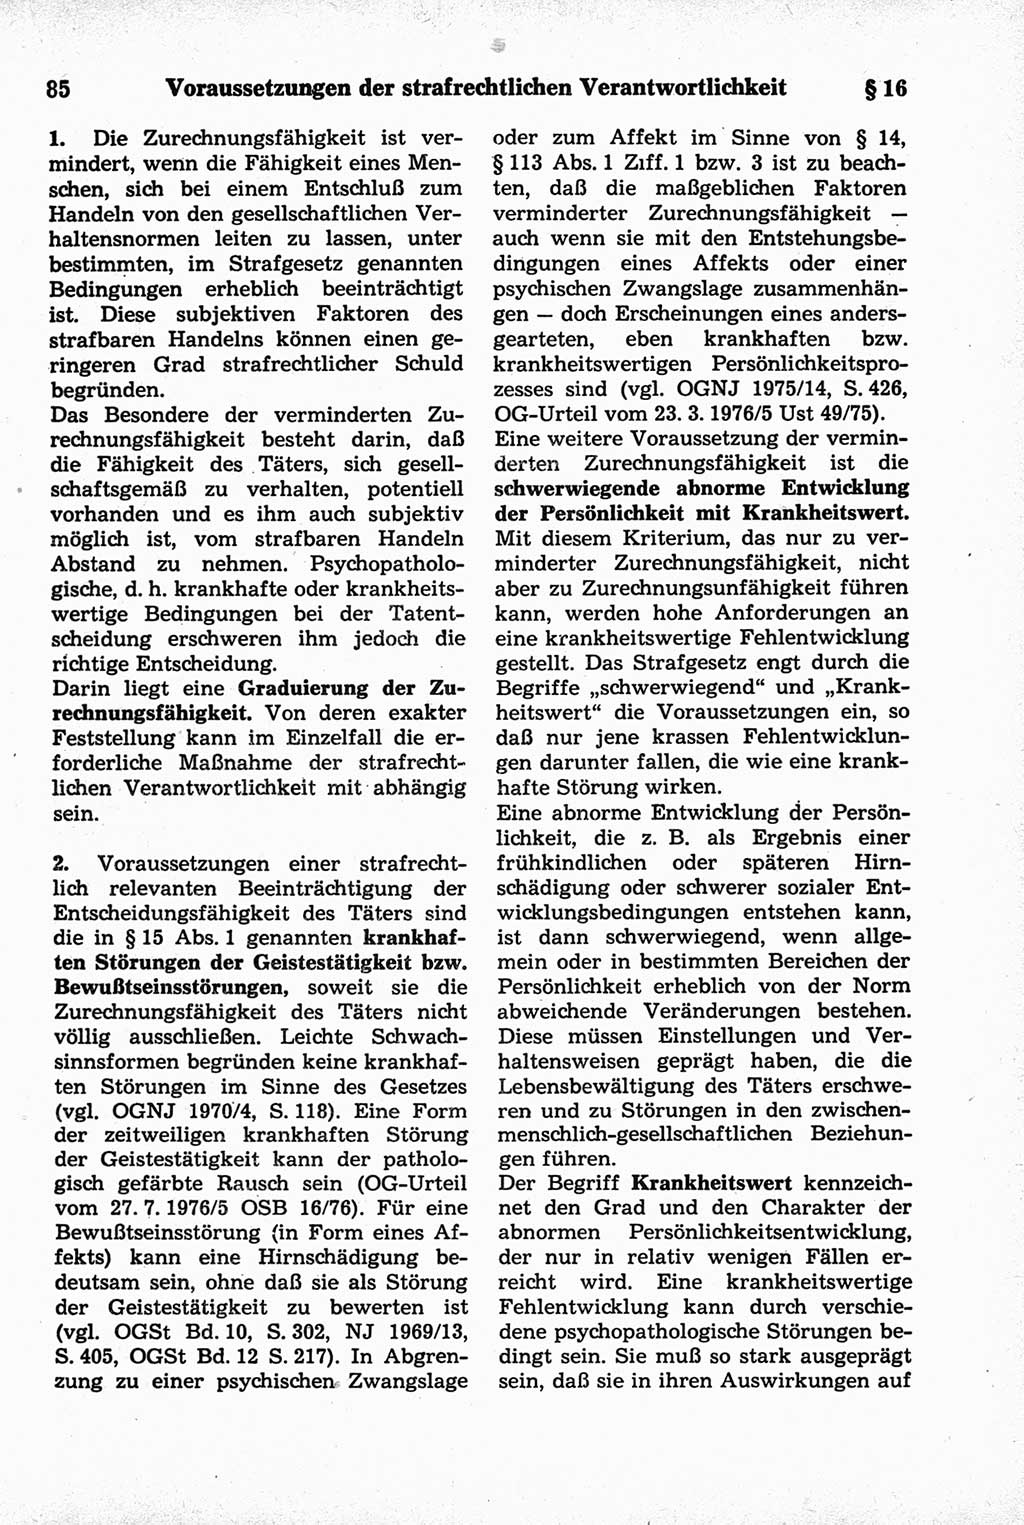 Strafrecht der Deutschen Demokratischen Republik (DDR), Kommentar zum Strafgesetzbuch (StGB) 1981, Seite 85 (Strafr. DDR Komm. StGB 1981, S. 85)